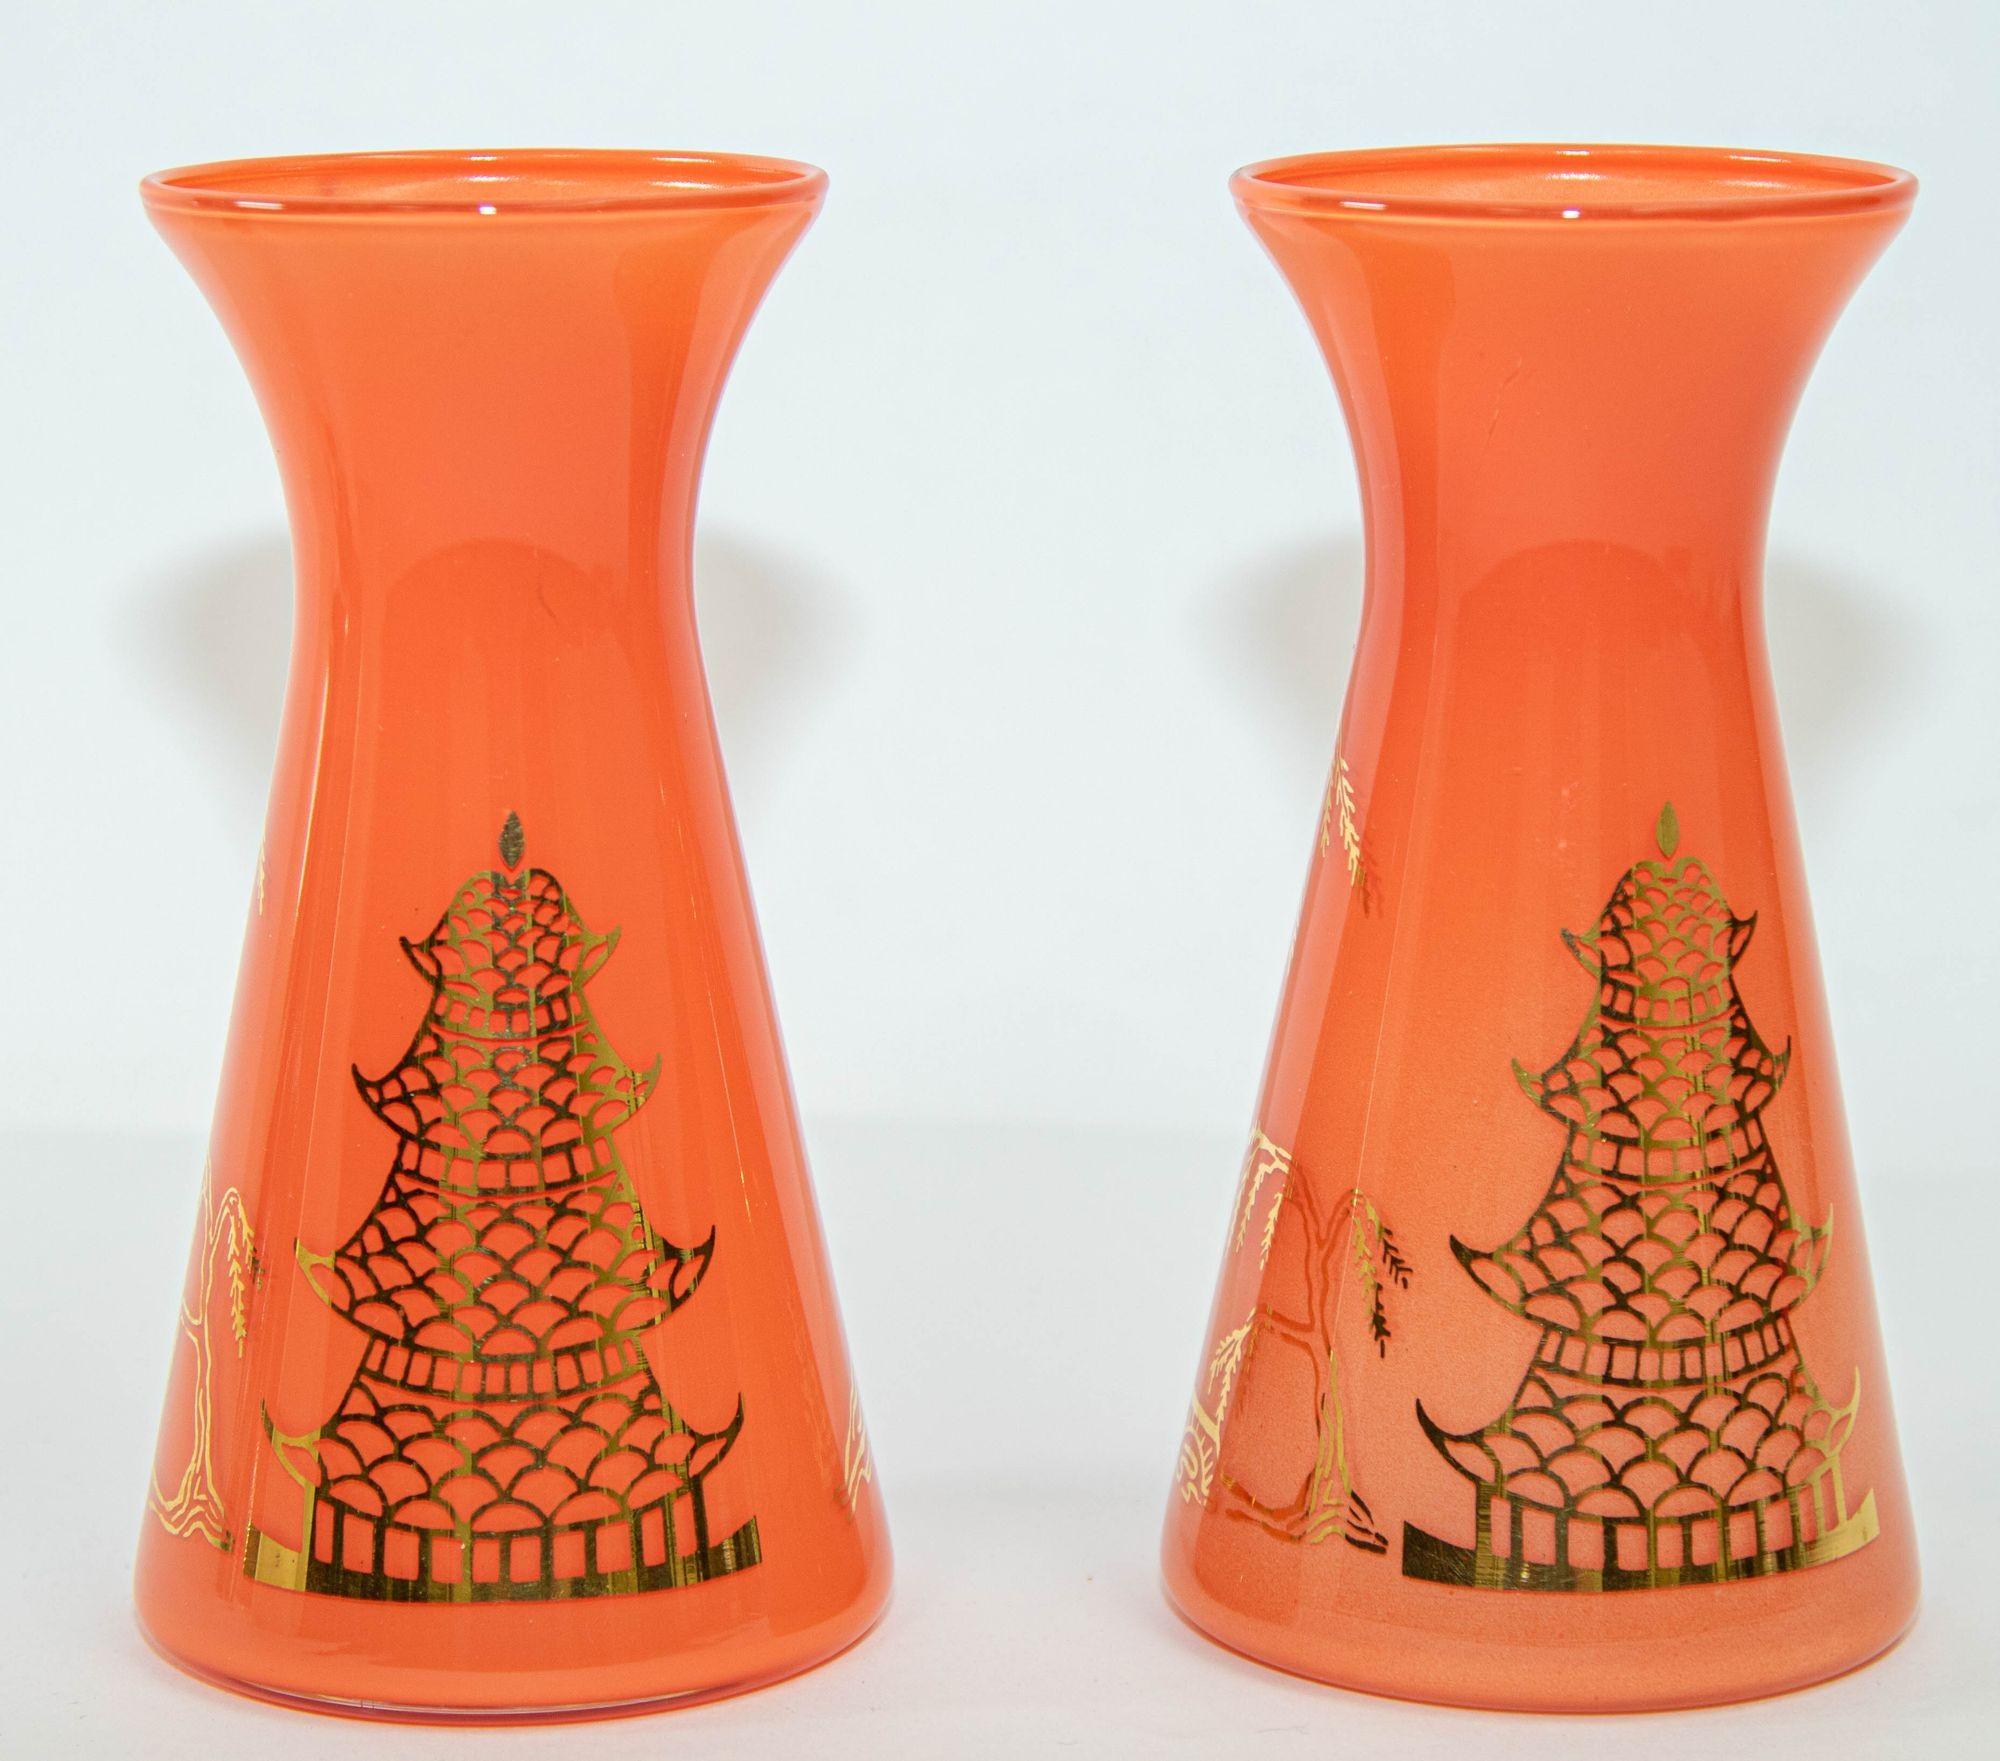 Vintage Mid Century Oriental Orange Vases Set of 2 with Gold Asian Design.
Paire de vases en verre de style Gay Fad peints à la main en orange vif, couleur corail avec des motifs dorés d'arbres asiatiques et de pagodes.
Dimensions : 6 in H x 3.25 in